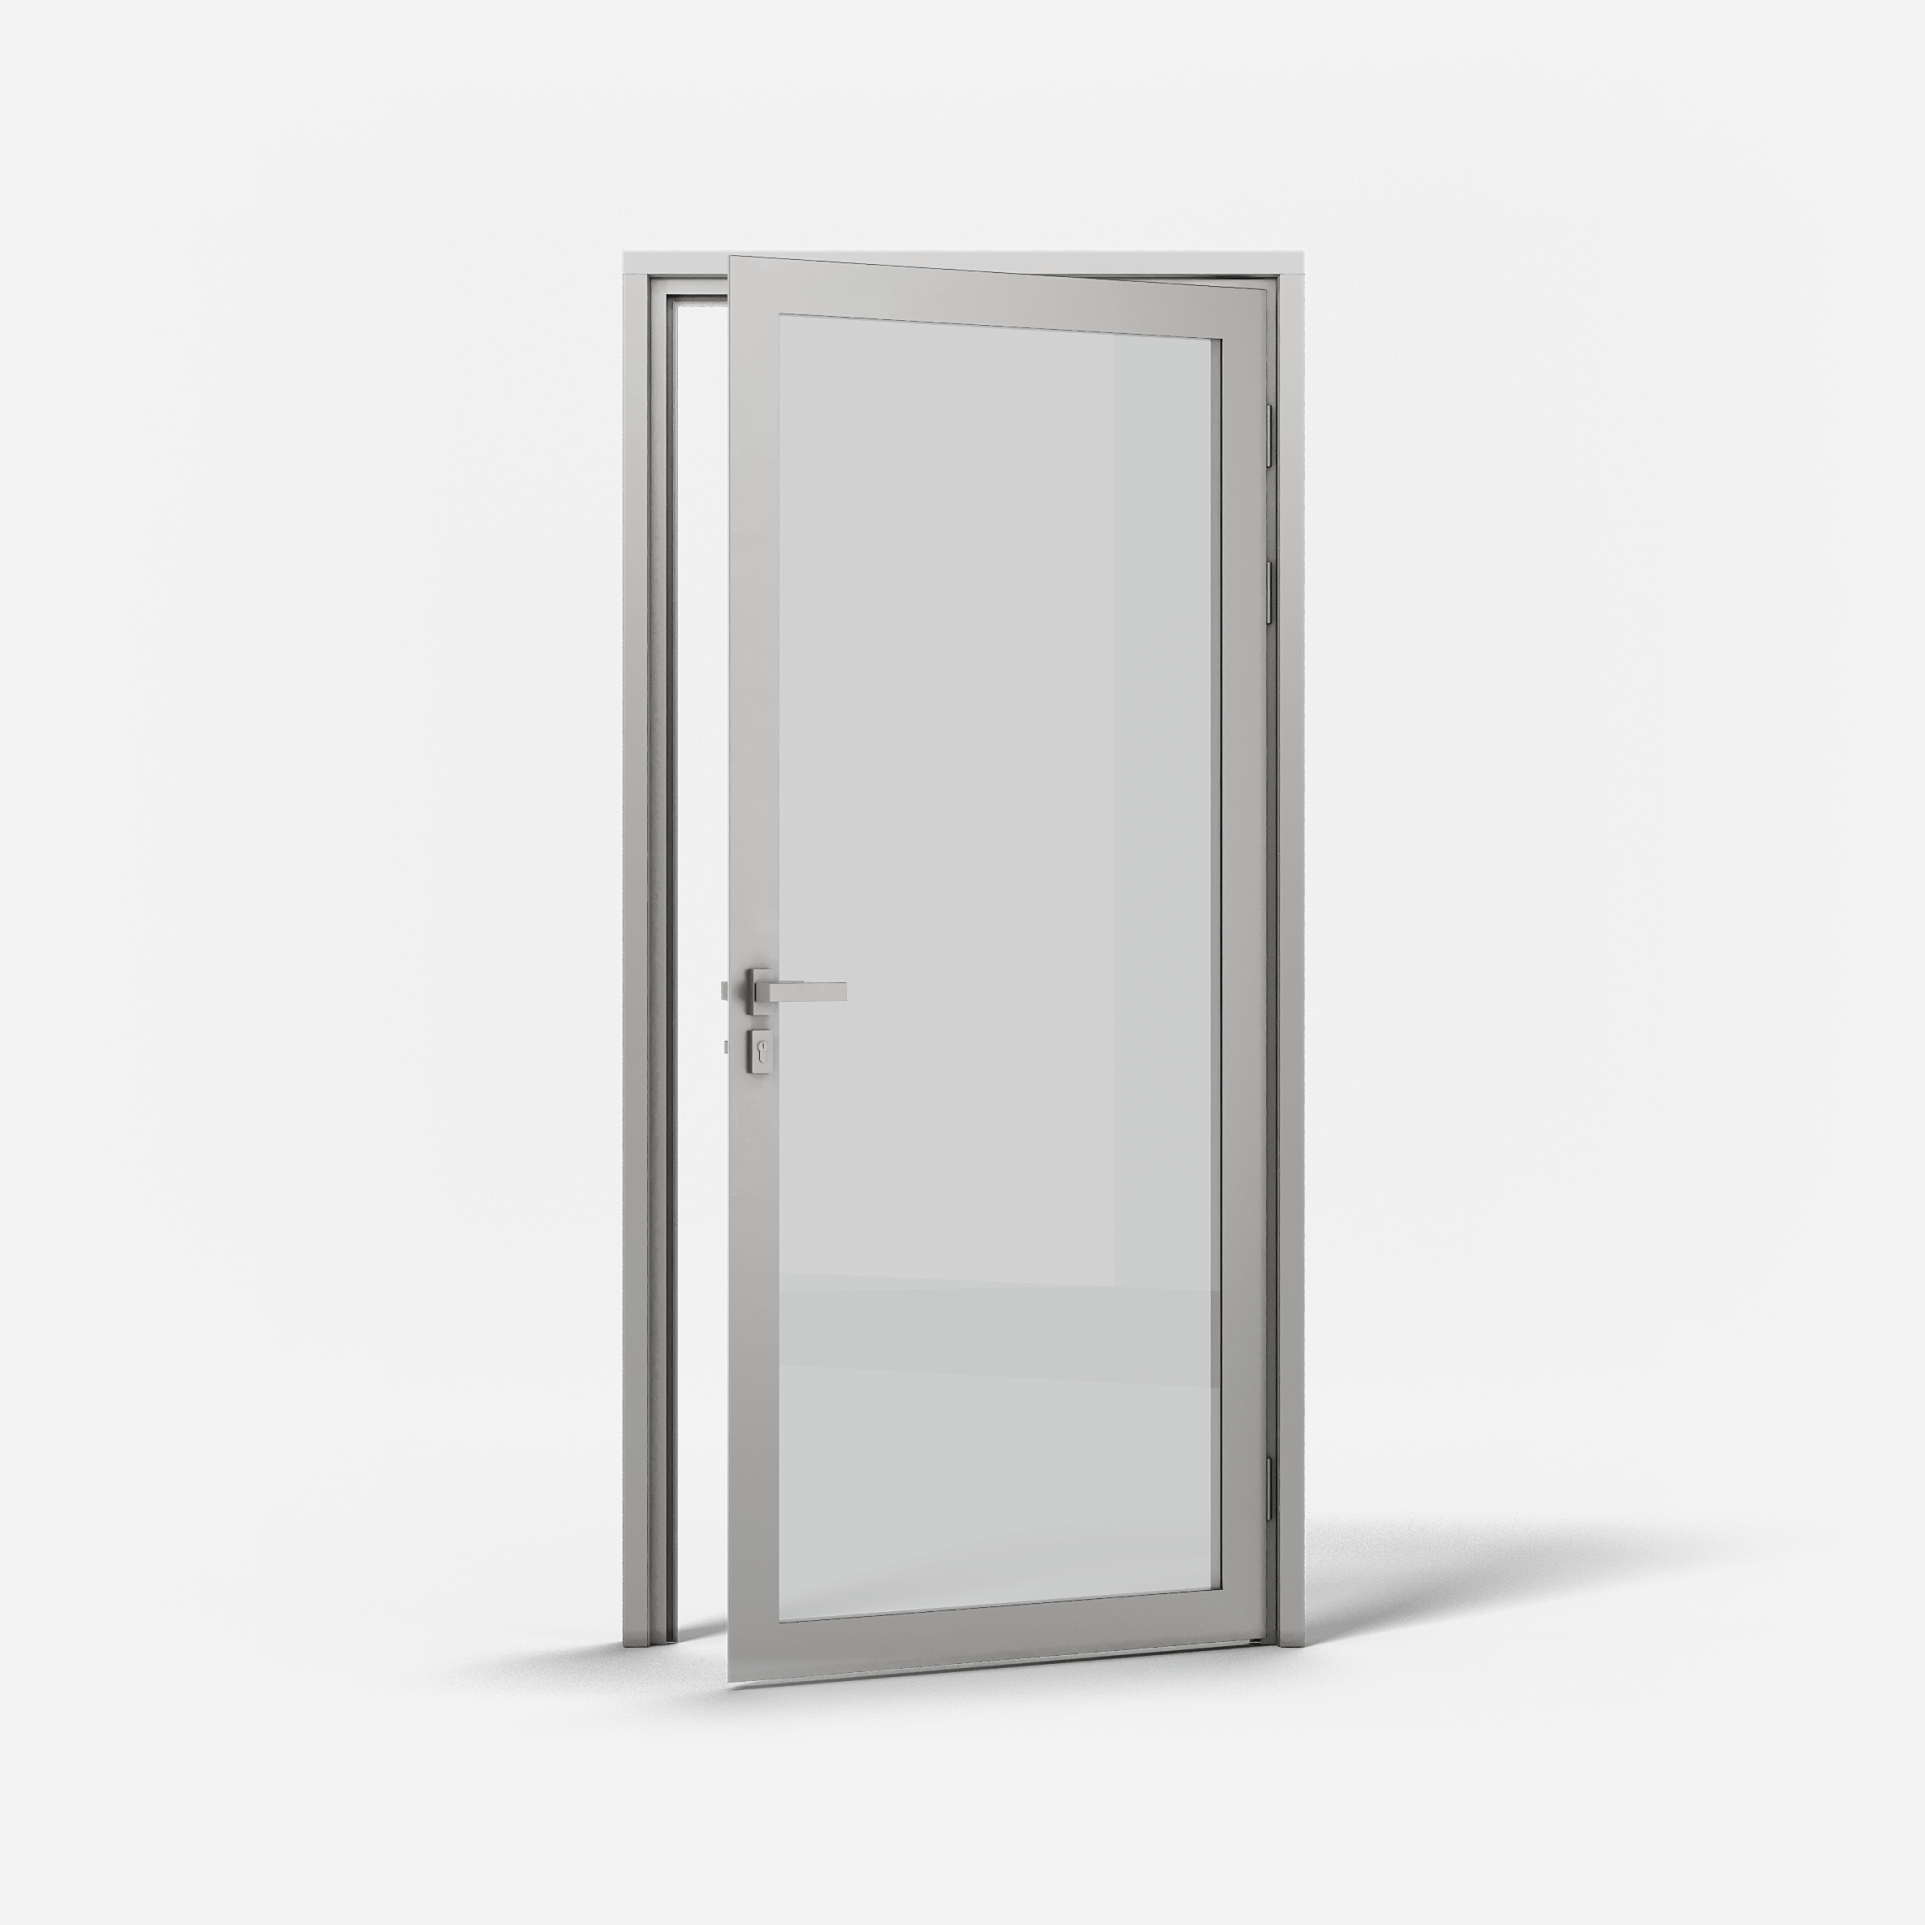 KOMPAS Aluminum Framed Single Swing Door -  RH Out